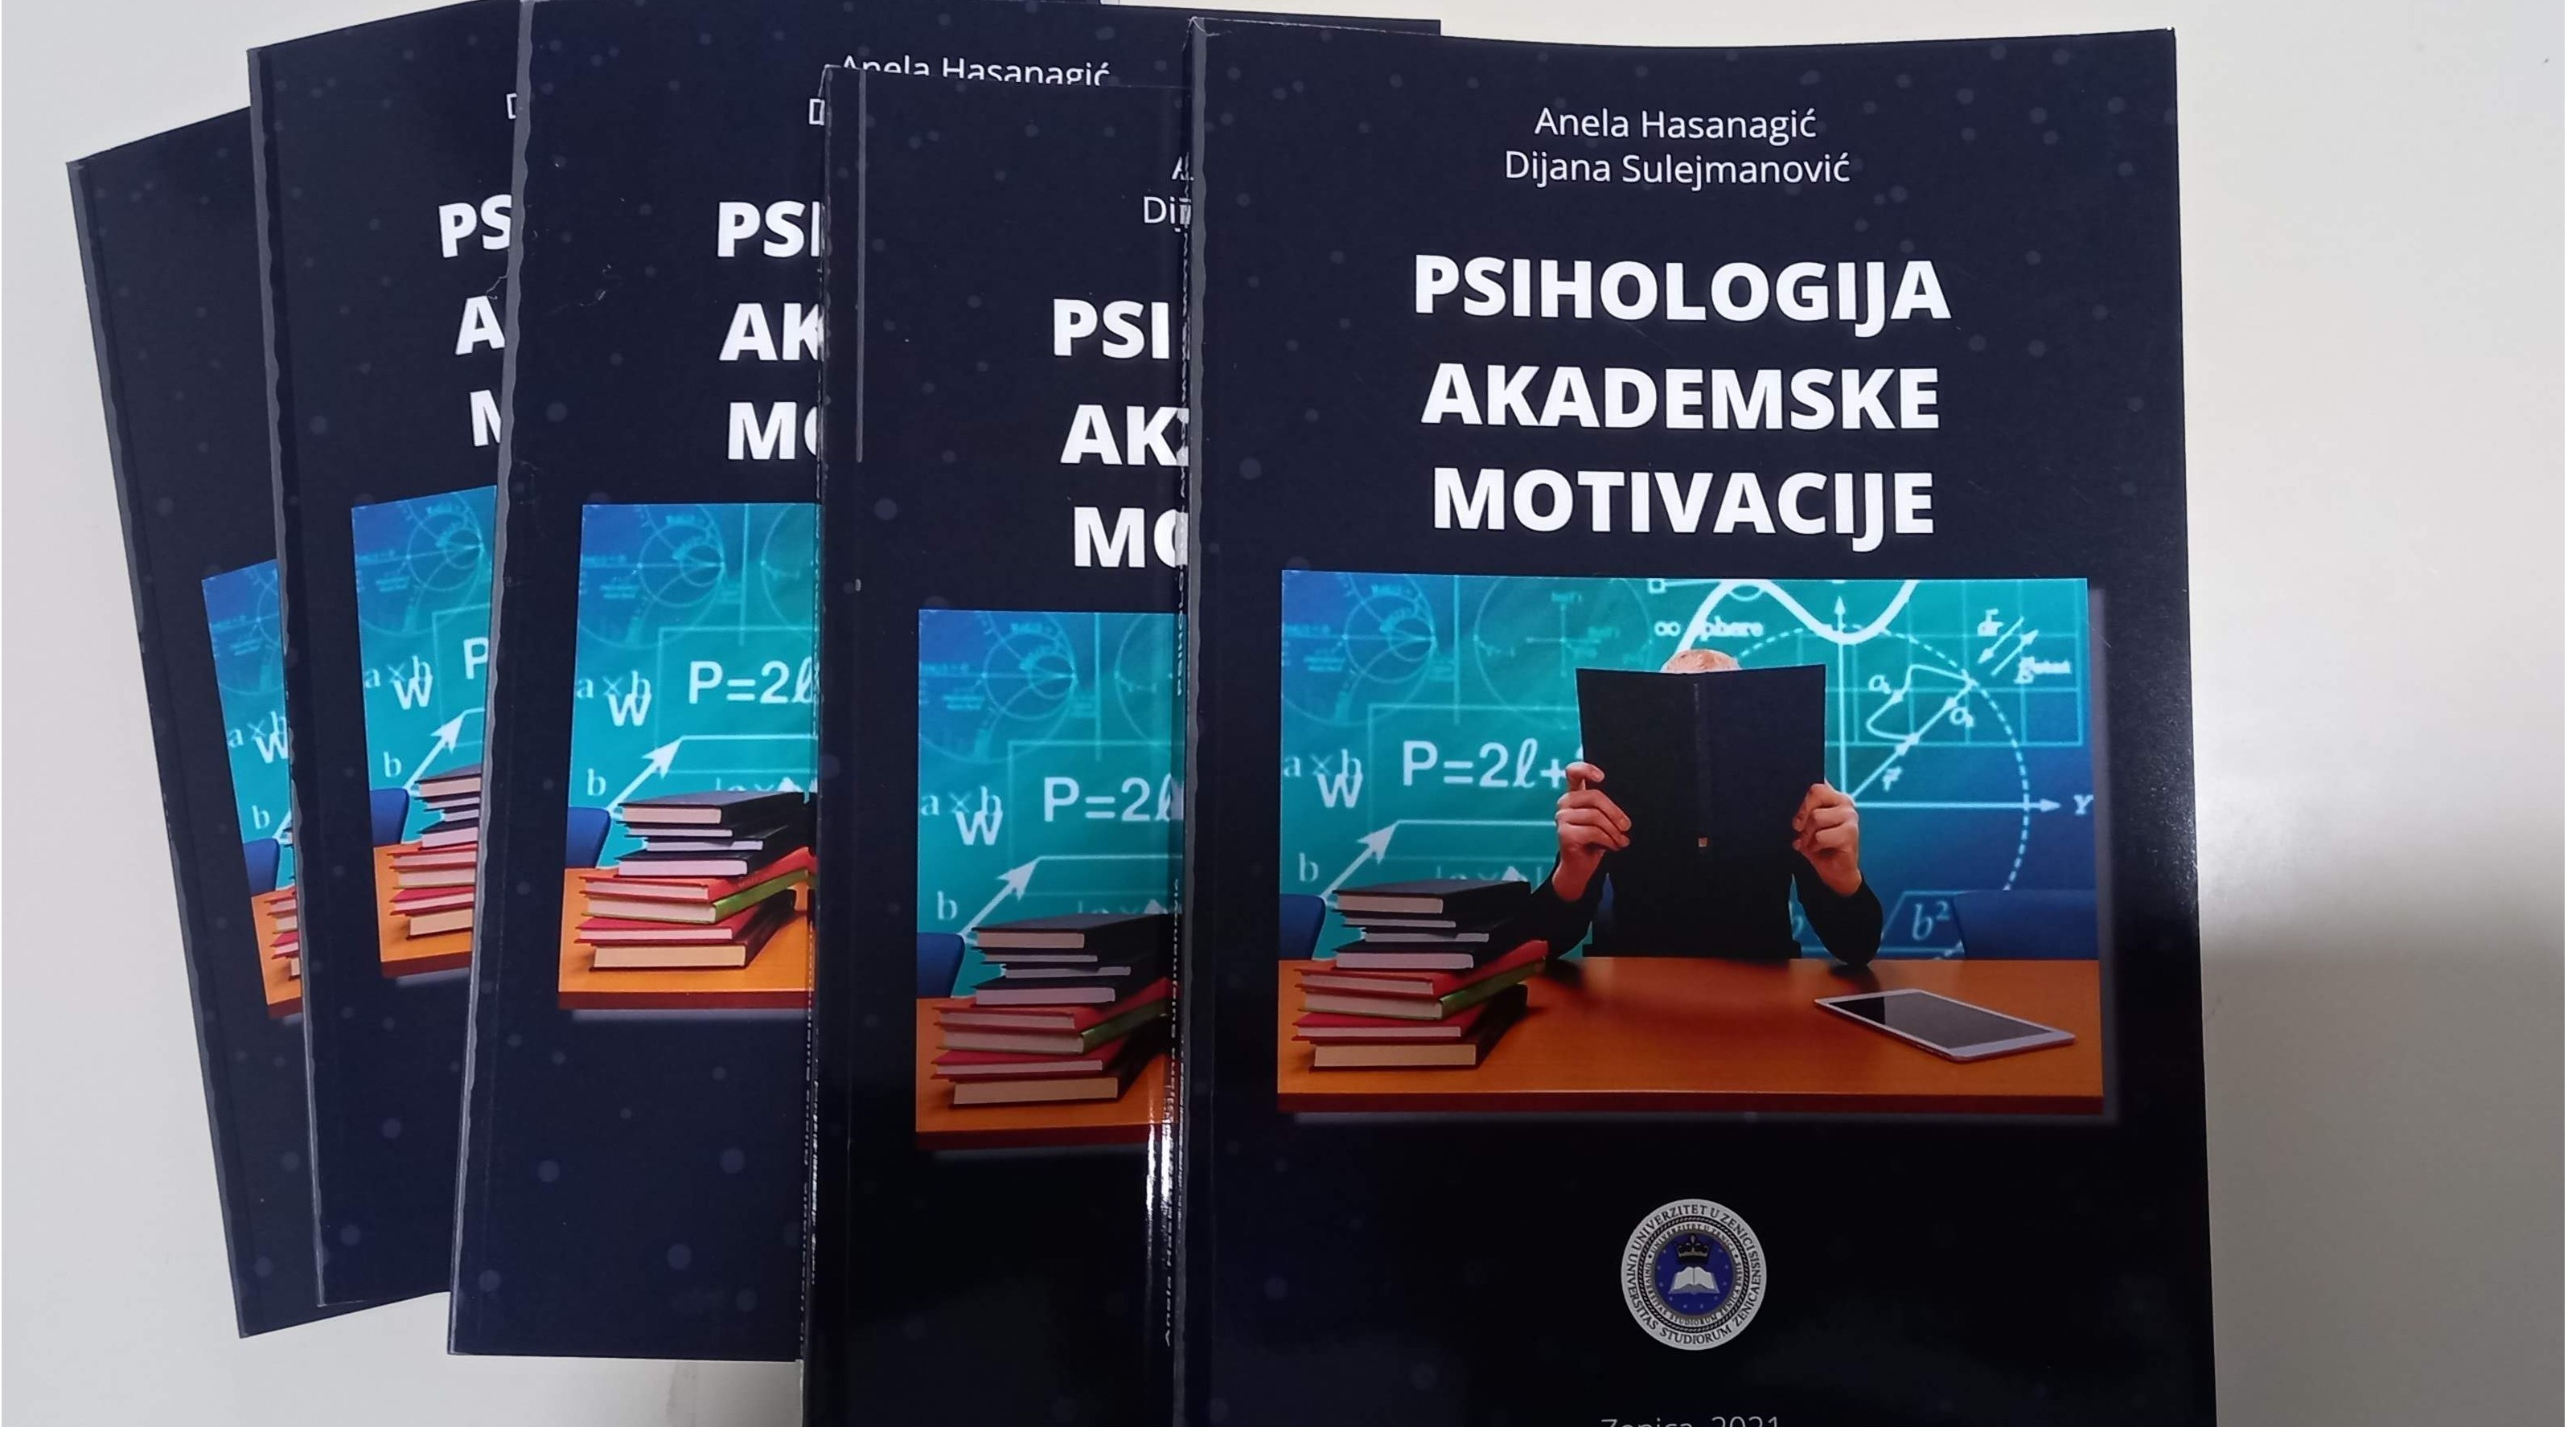 Objavljen udžbenik "Psihologija akademske motivacije" Anele Hasanagić i Dijane Sulejmanović